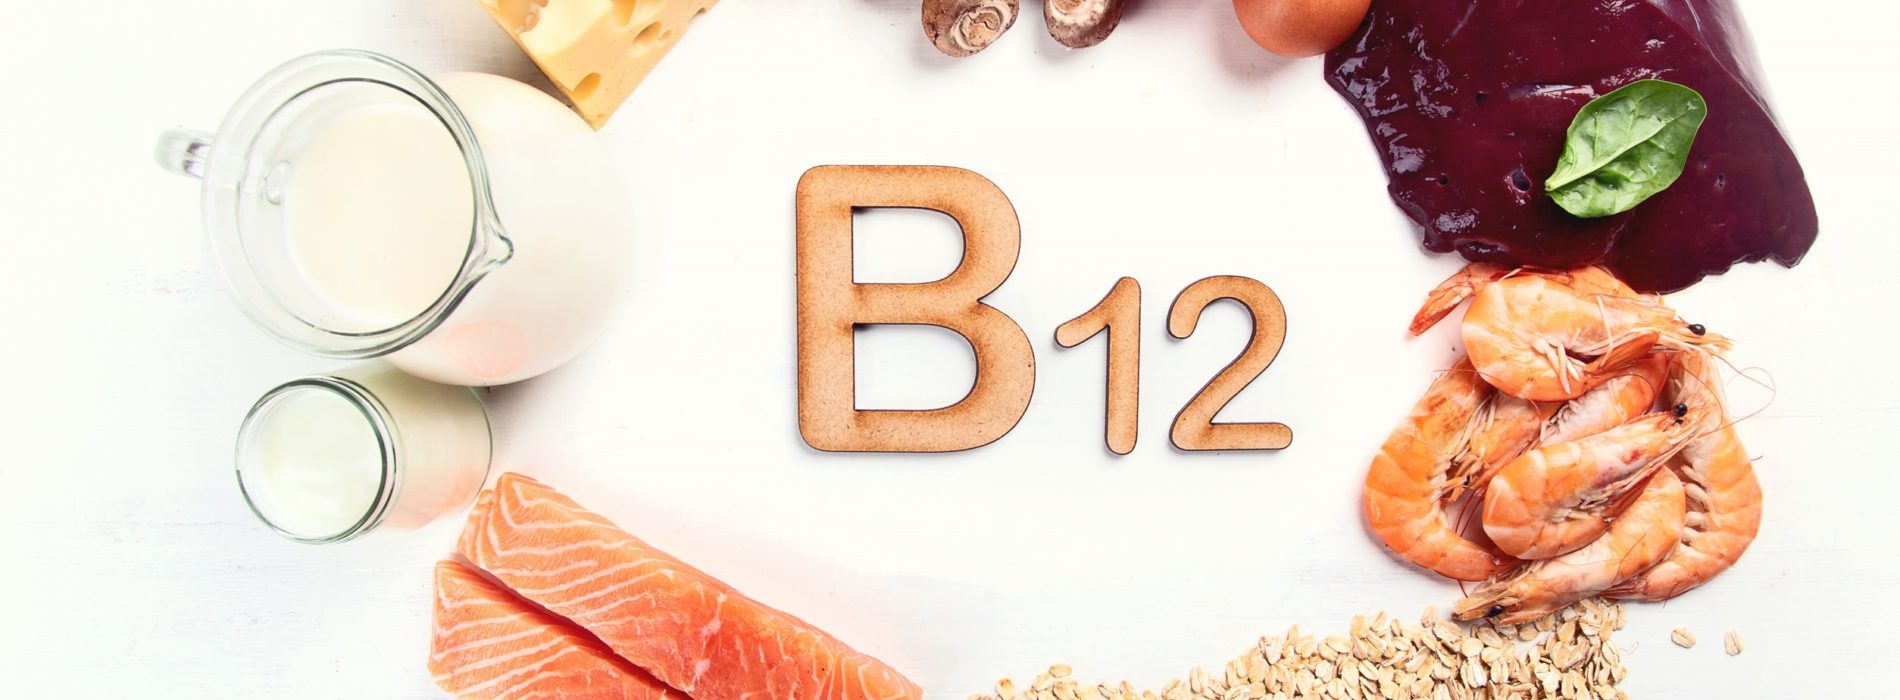 Witamina B12 – Źródło, występowanie i właściwości